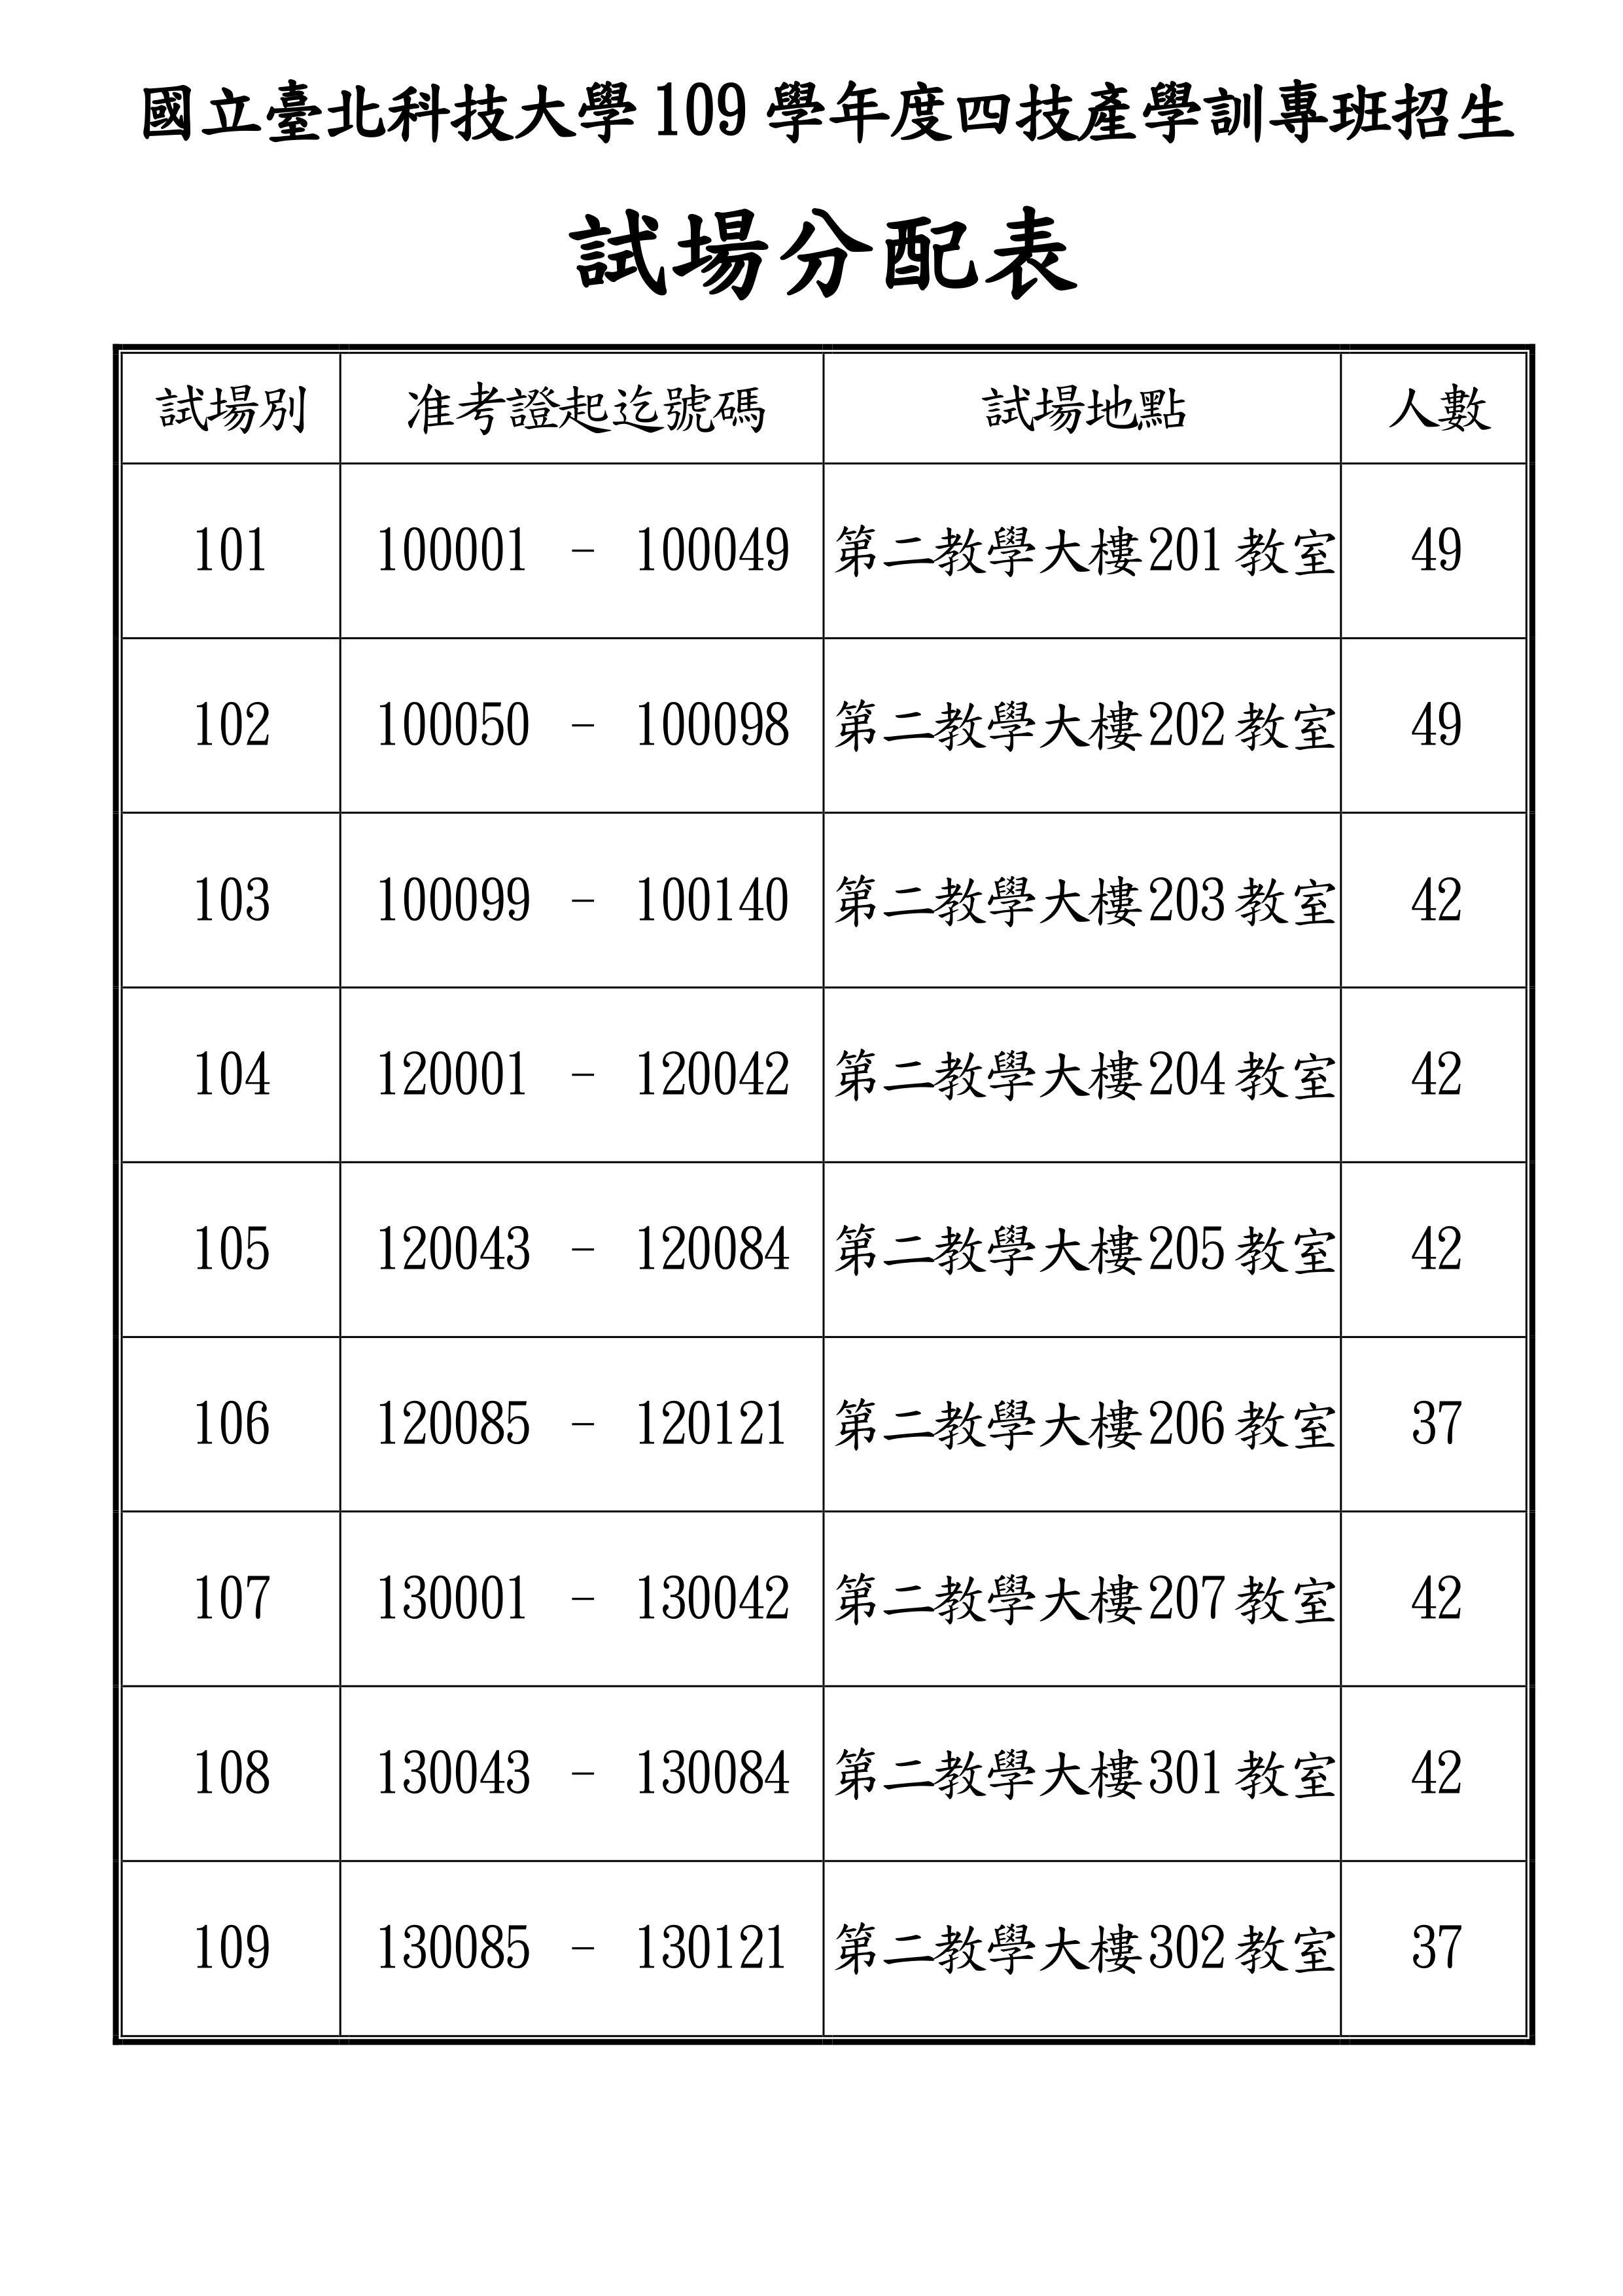 109產學訓專班招生試場分配表